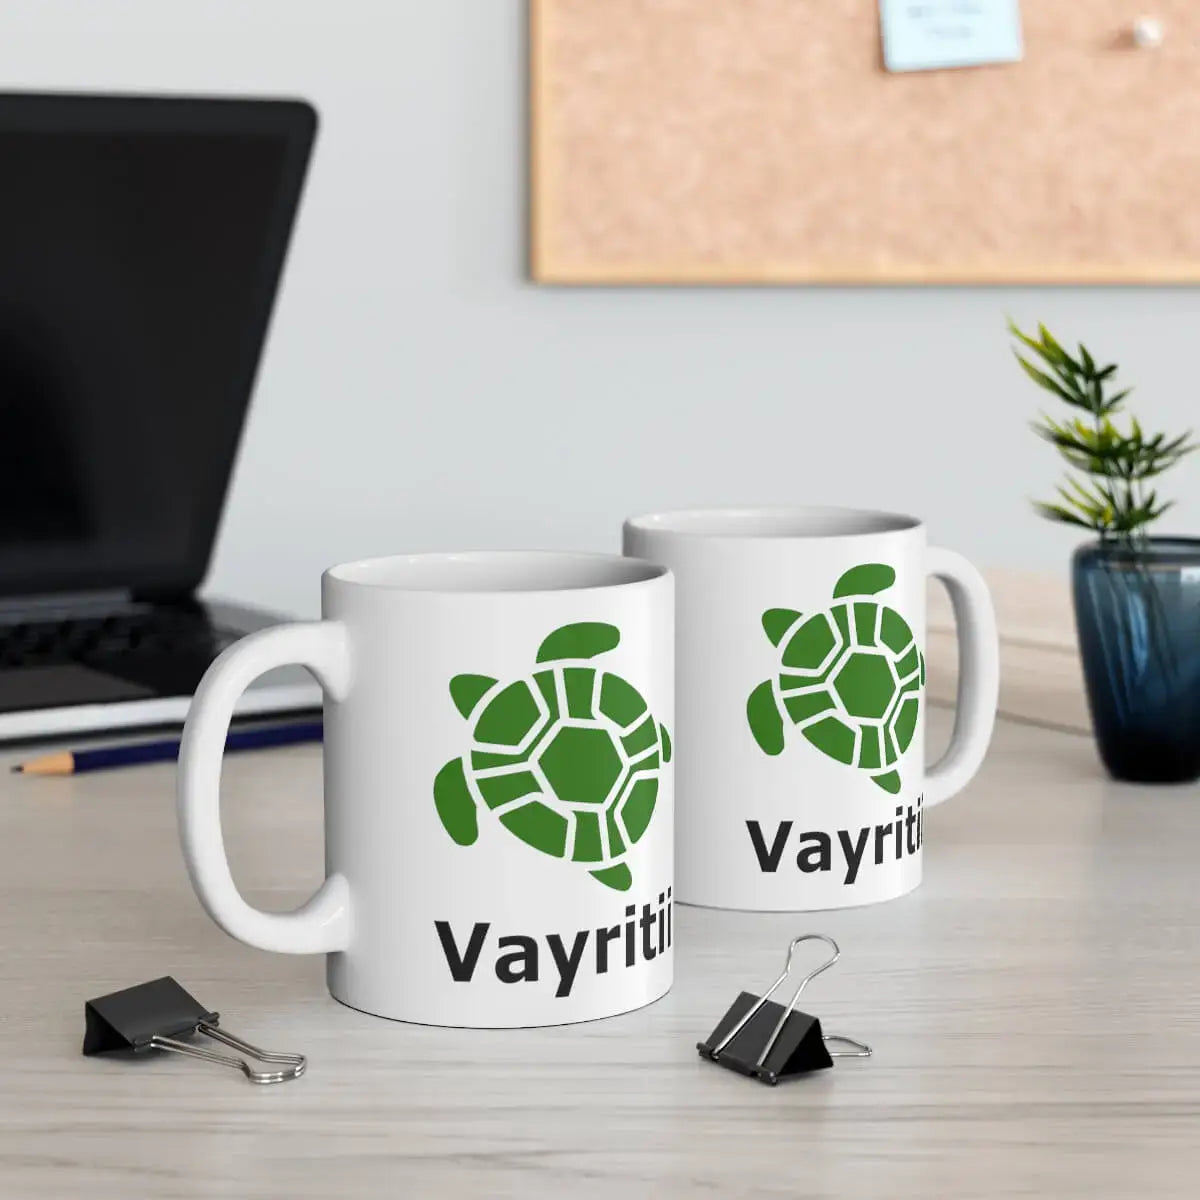 Vayritii (Truth) Turtle Mug